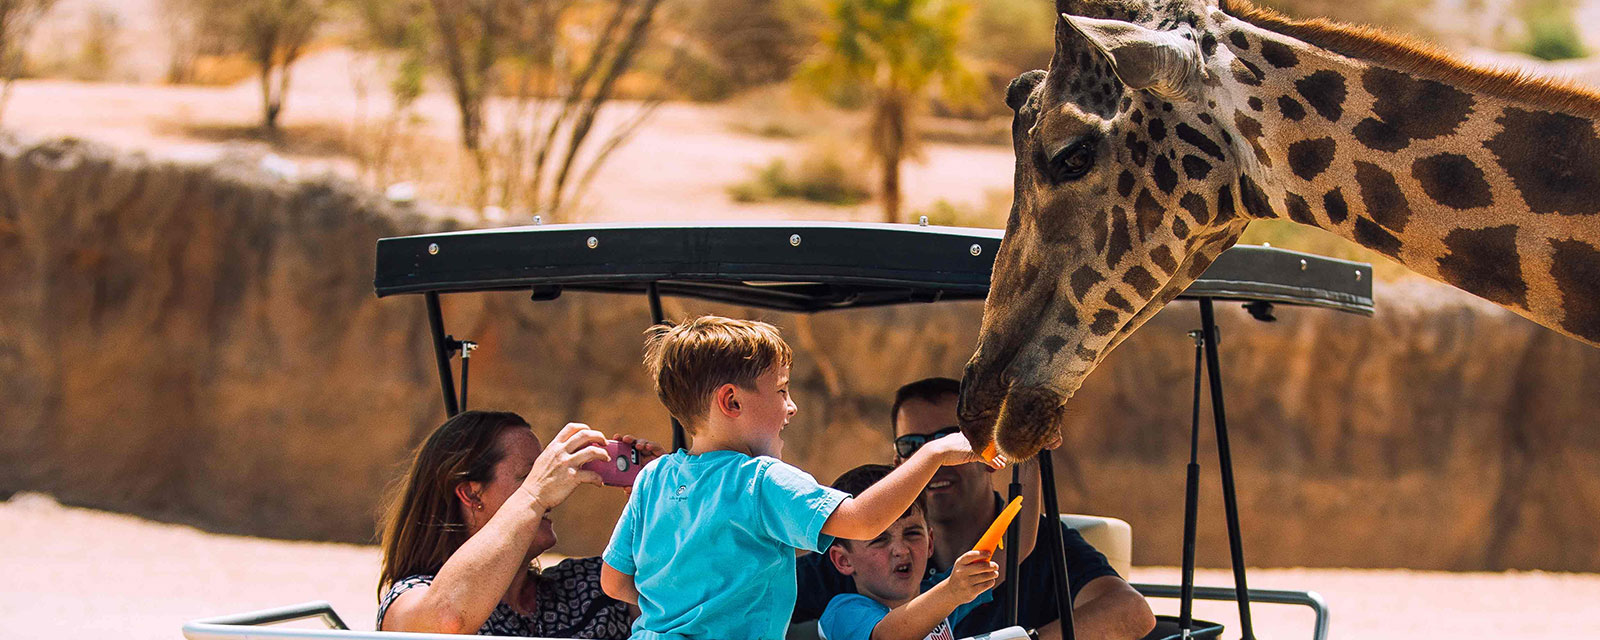 عائلة من السياح في حديقة حيوانات العين والأطفال يطعمون الزرافة ويصورون